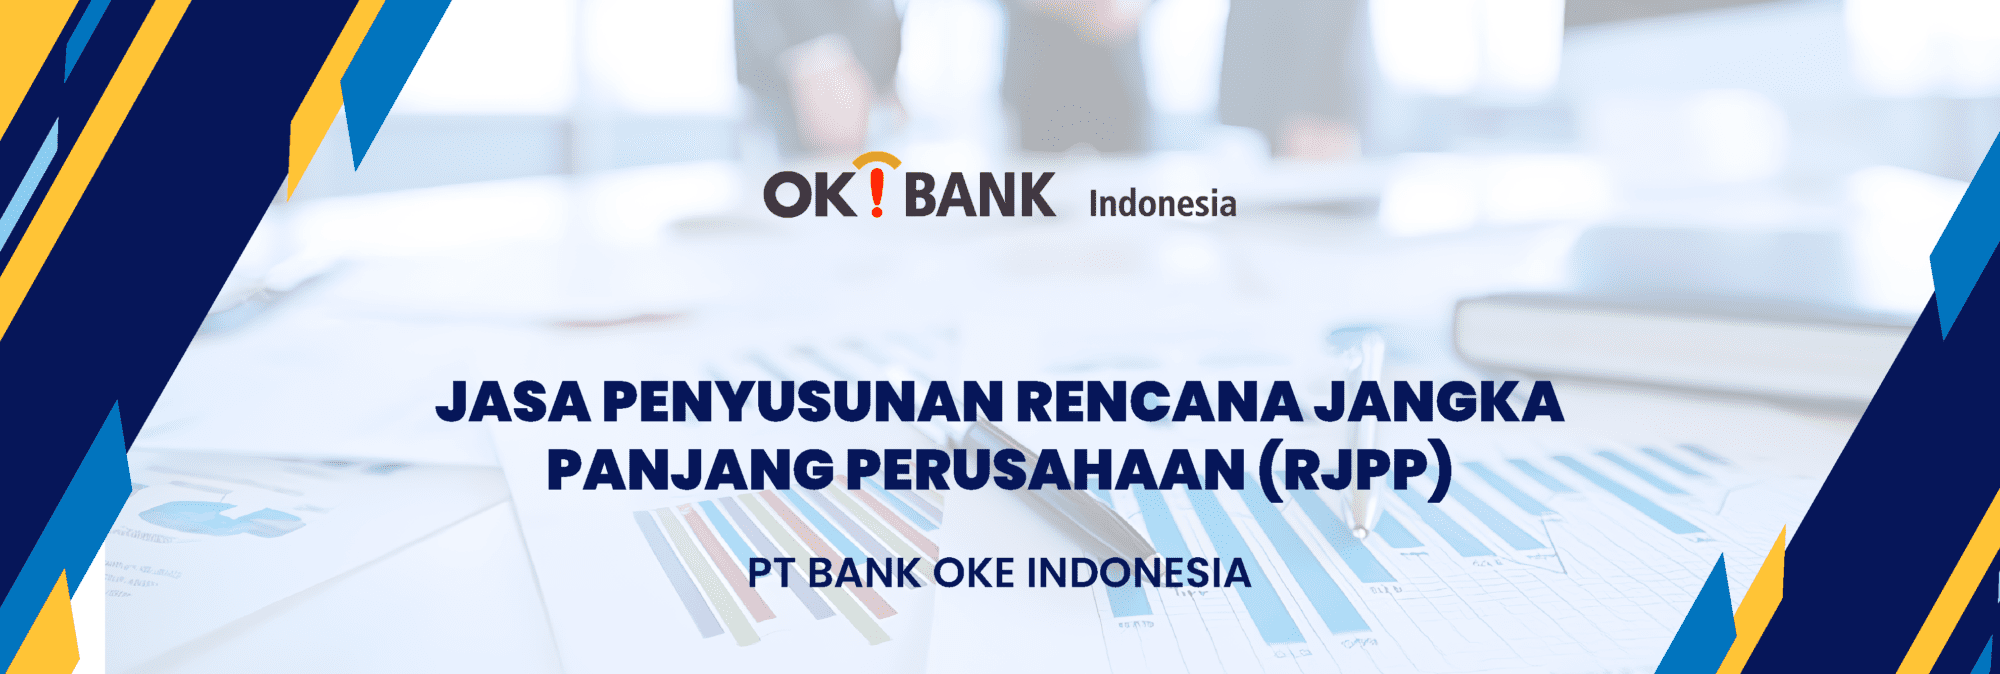 RJPP BANK OKE INDONESIA